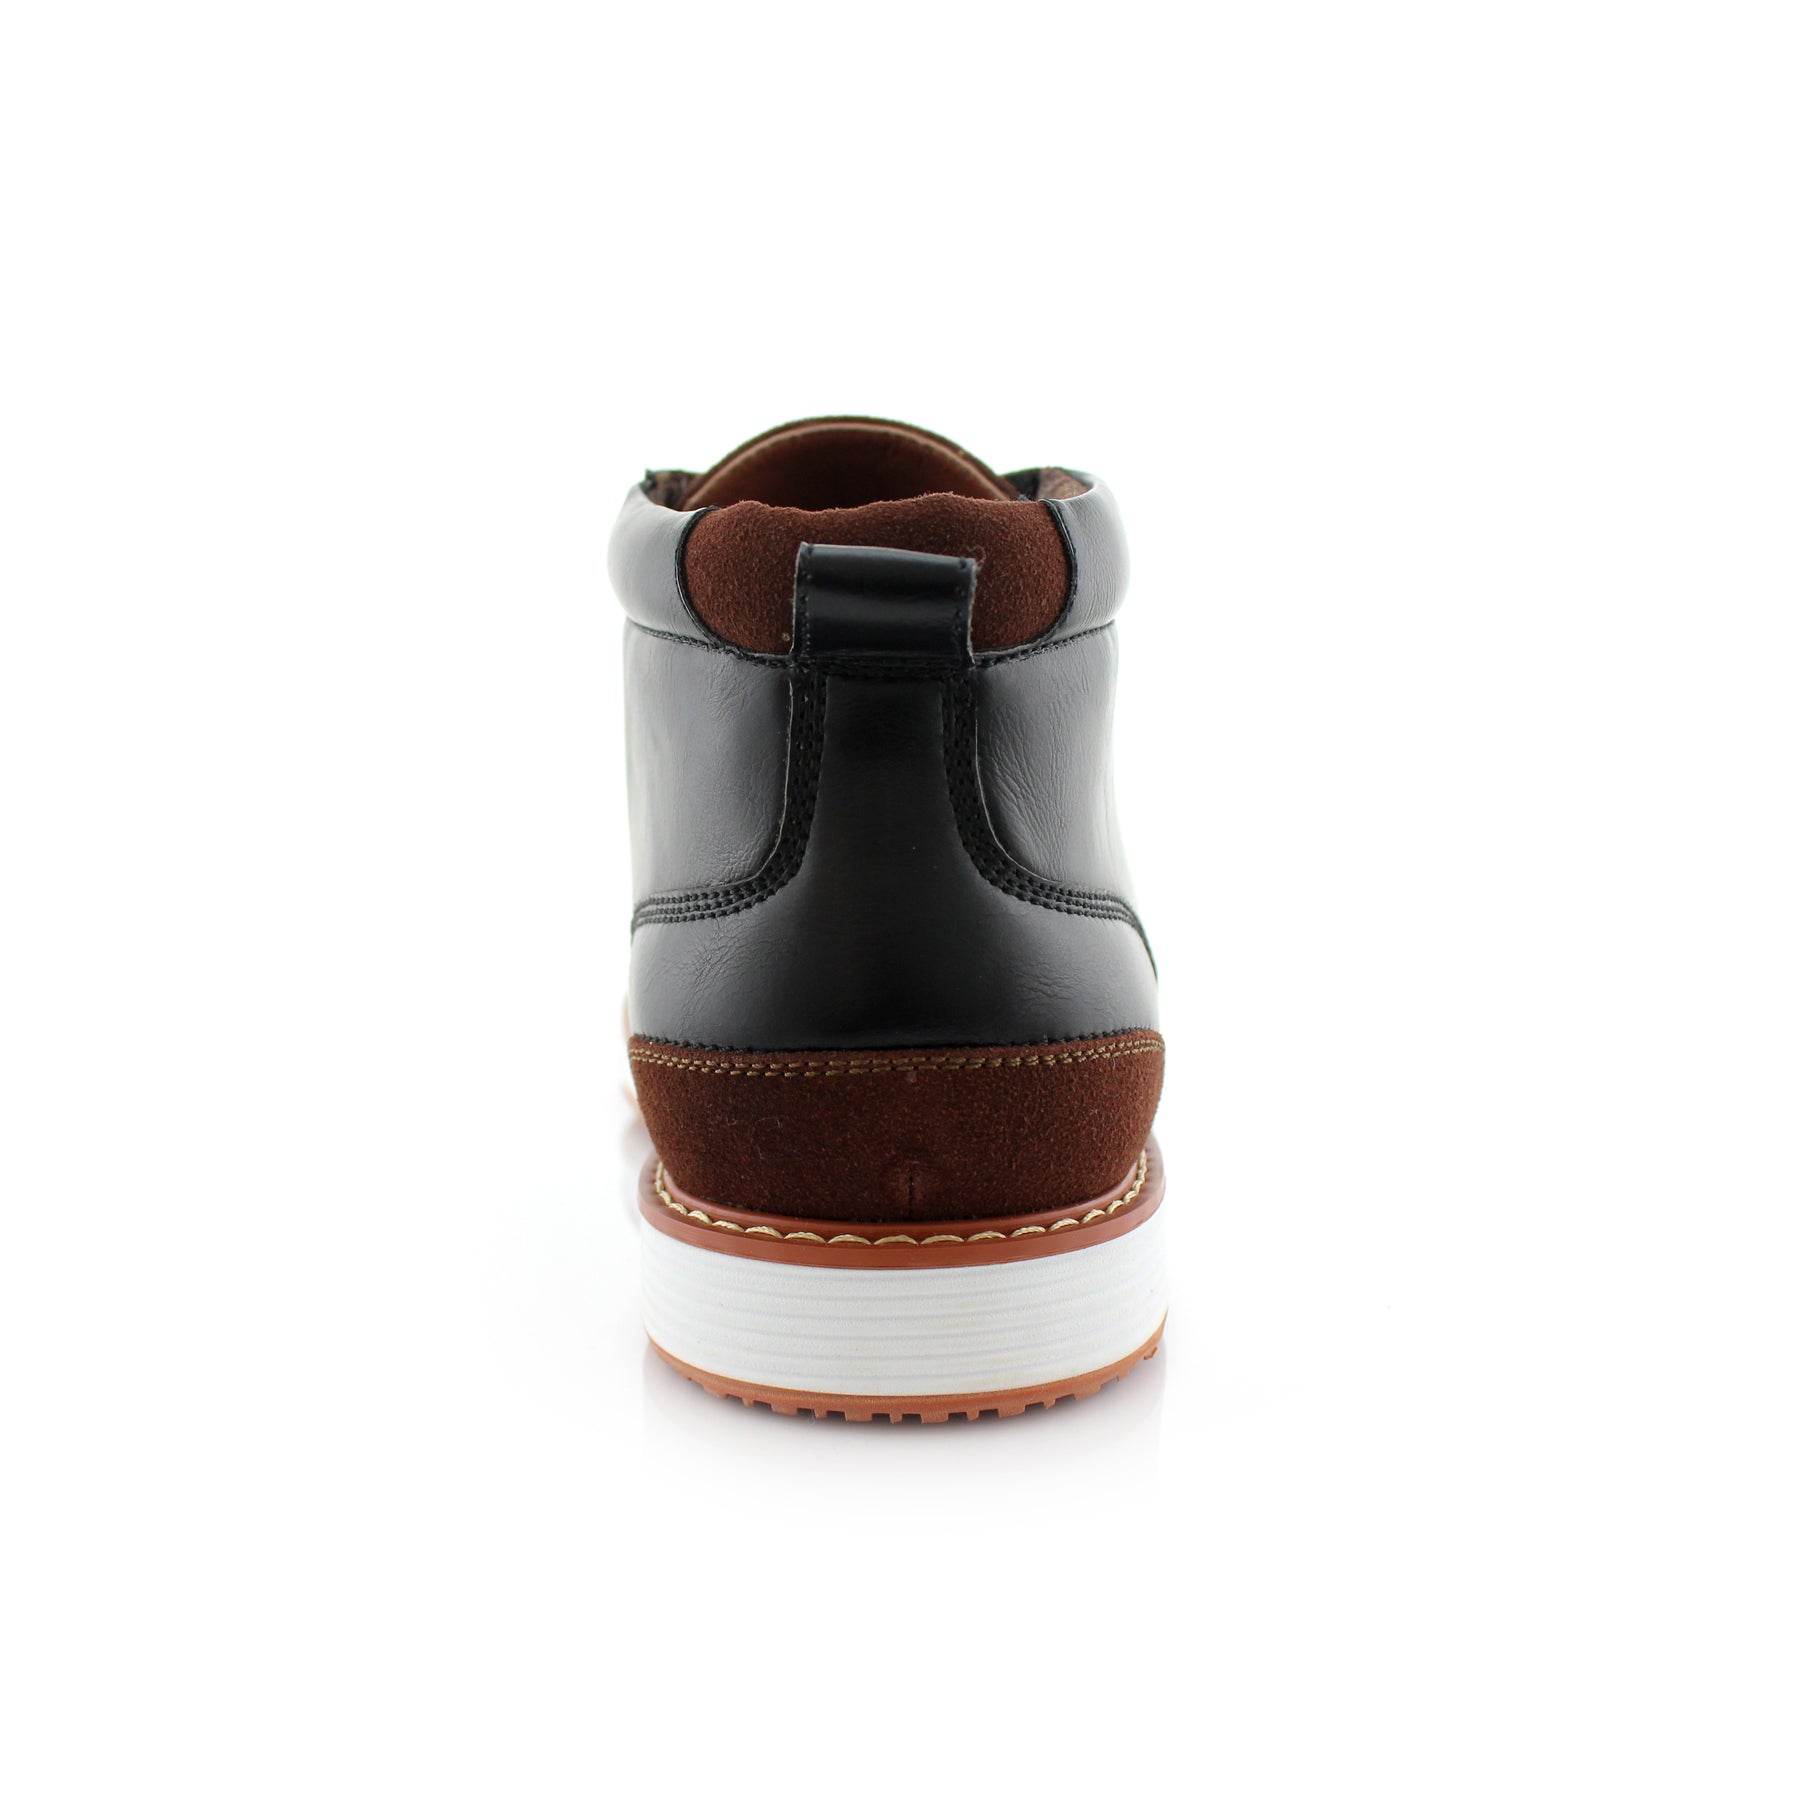 Sneaker Chukka Boots | Houstan by Ferro Aldo | Conal Footwear | Back Angle View